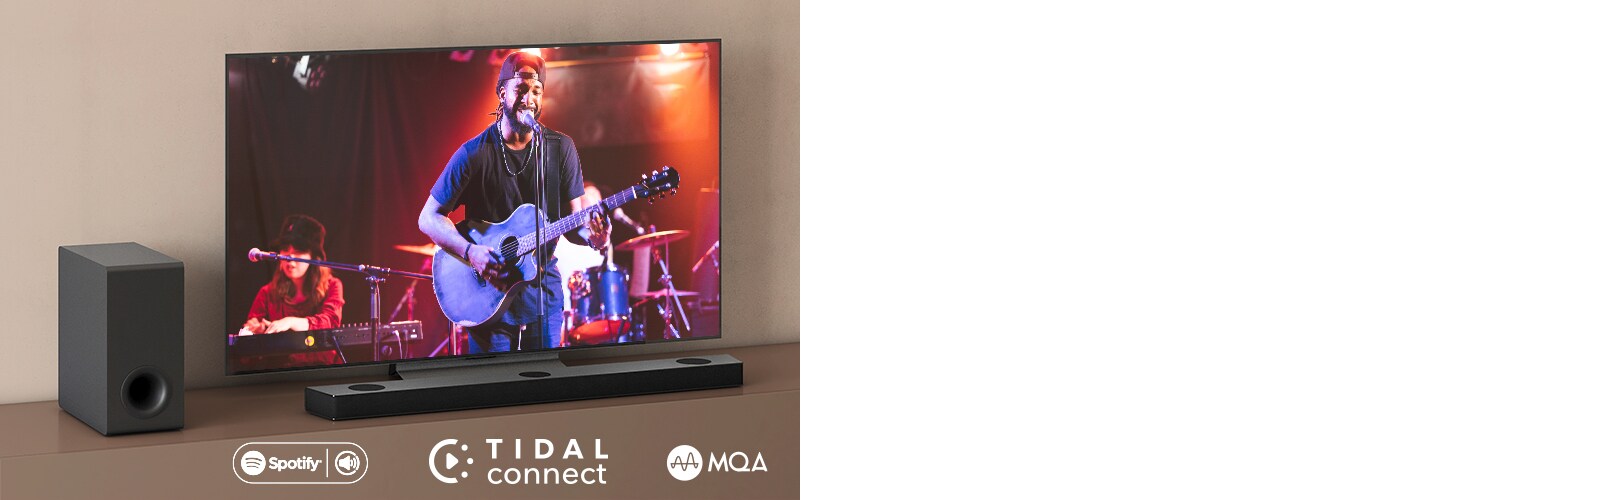 LG televizor nalazi se na smeđoj polici, LG Sound Bar S90QY nalazi se ispred televizora. Niskofrekvencijski zvučnik smješten je s lijeve strane televizora. Na televizoru se prikazuje scena koncerata. Oznaka NOVO prikazana je u gornjem lijevom kutu.